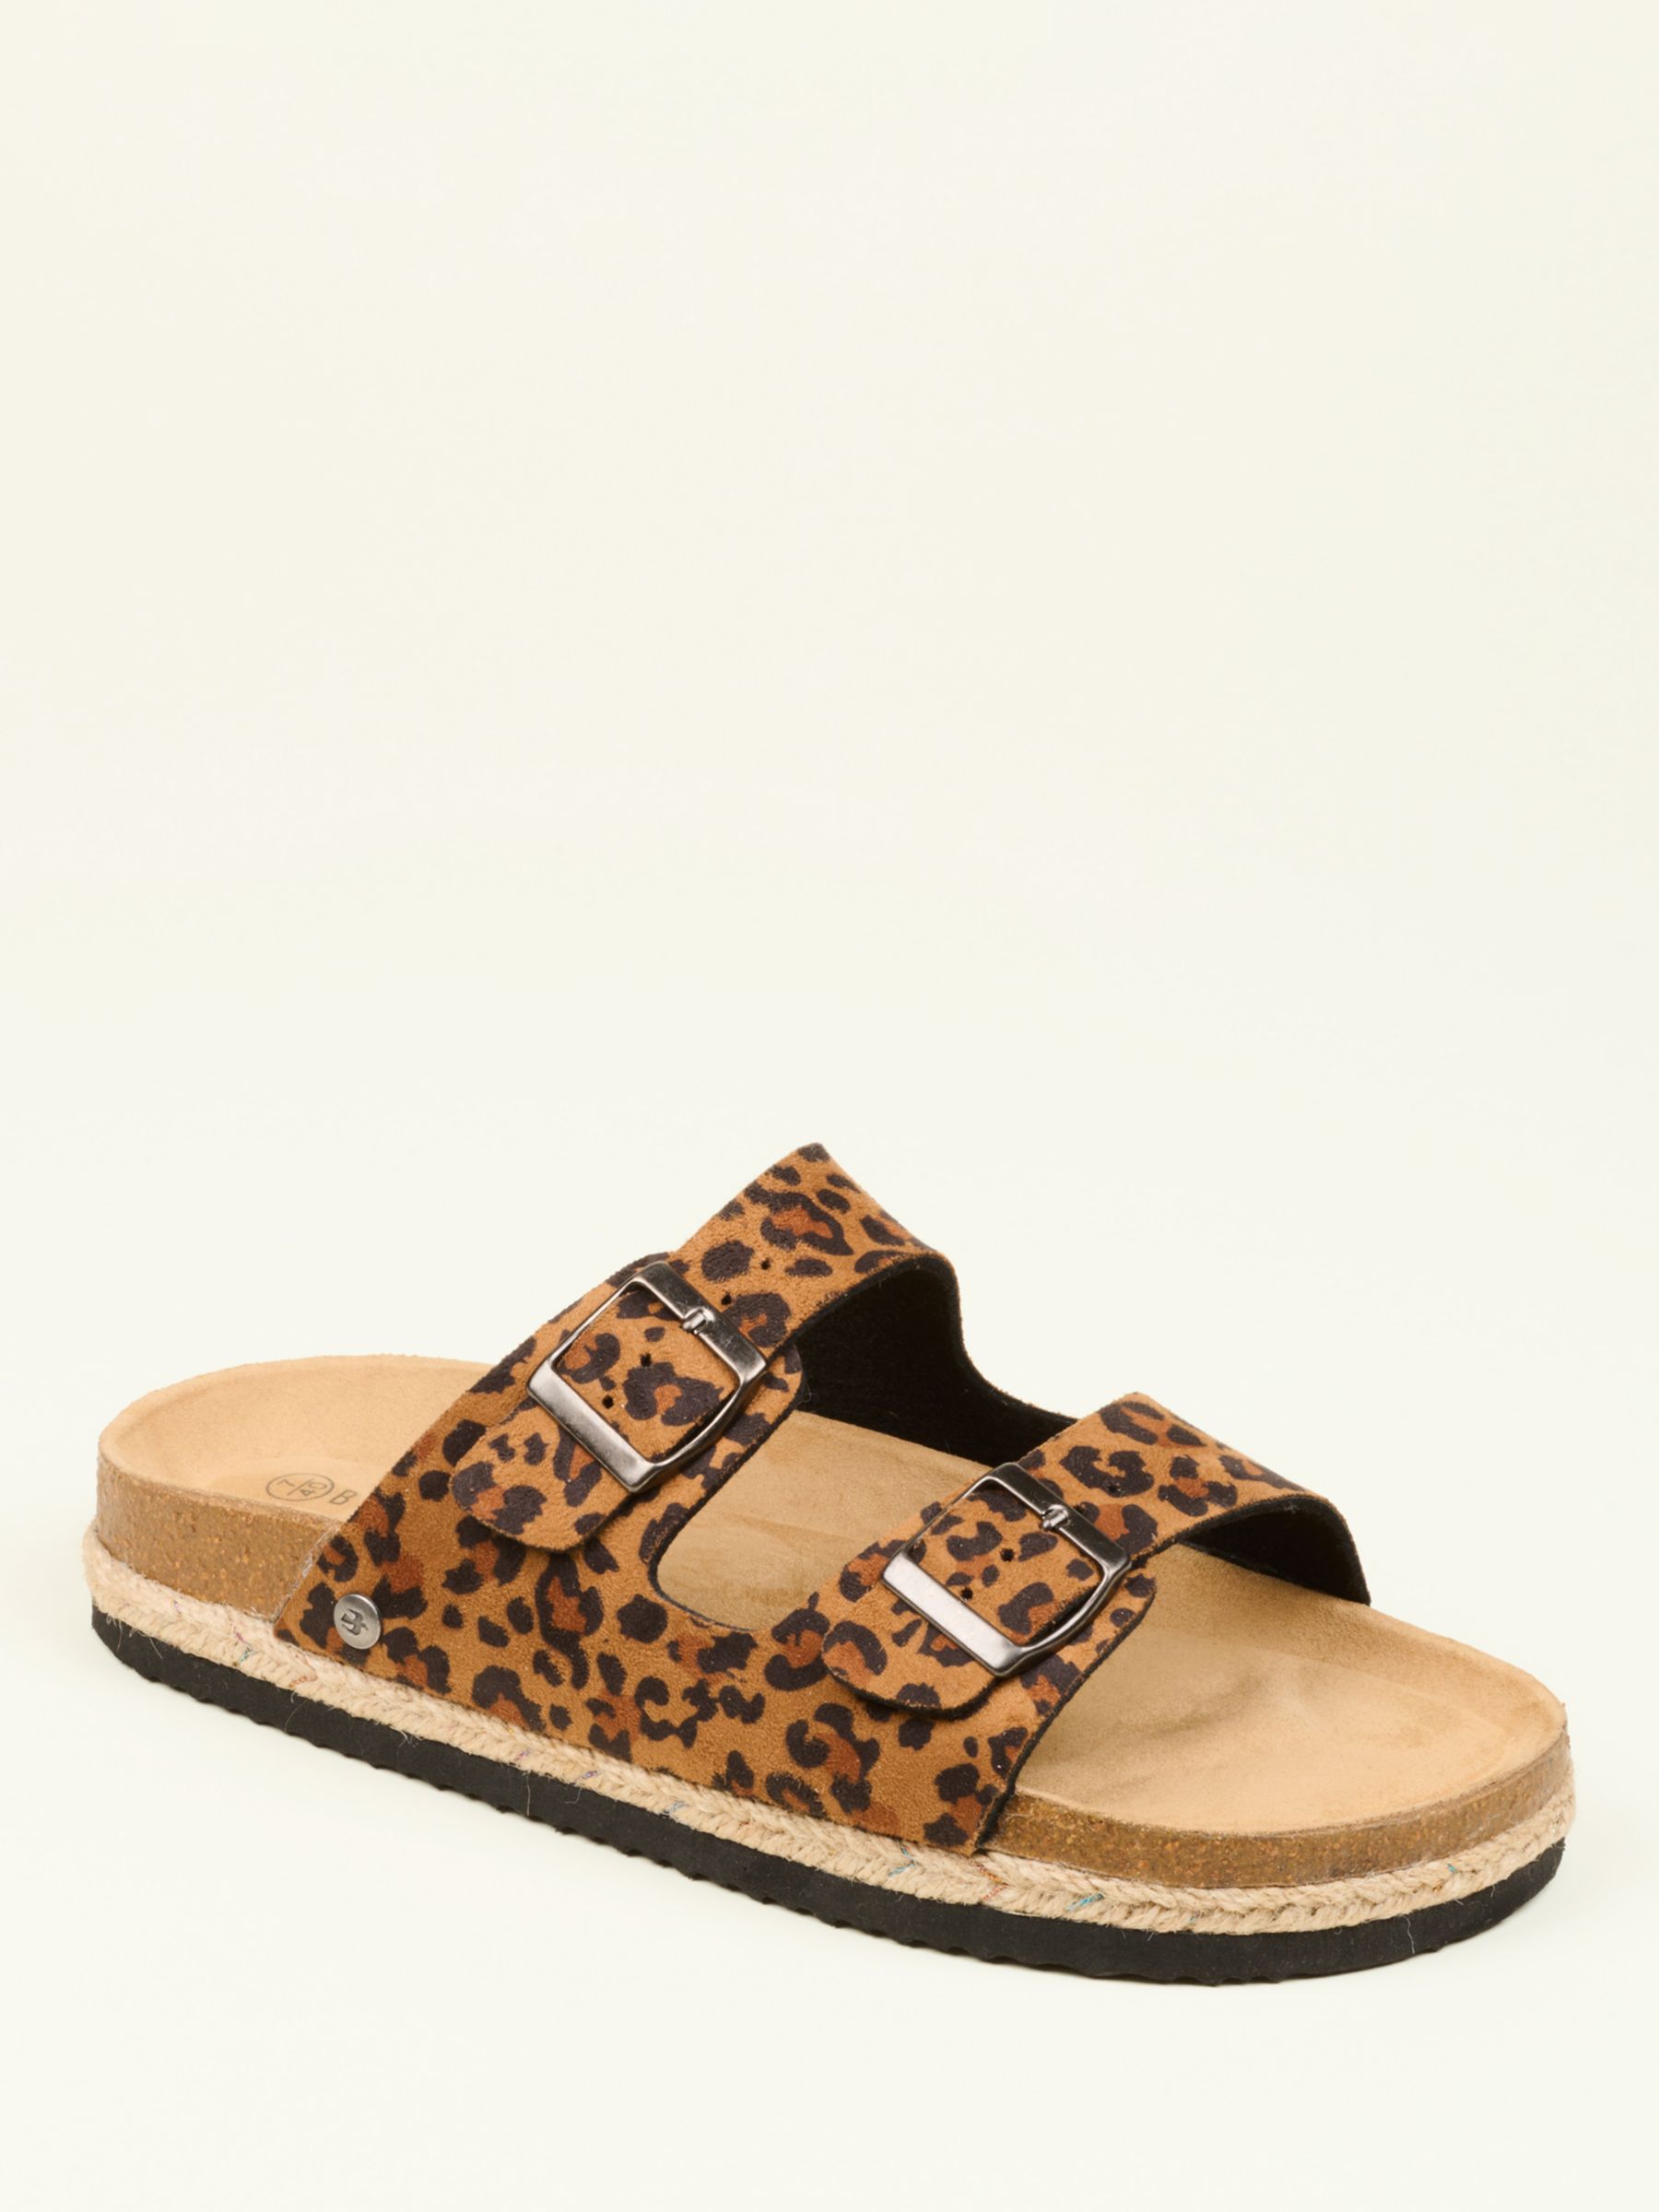 Buy Brakeburn Leopard Buckle Strap Sandals, Multi Online at johnlewis.com